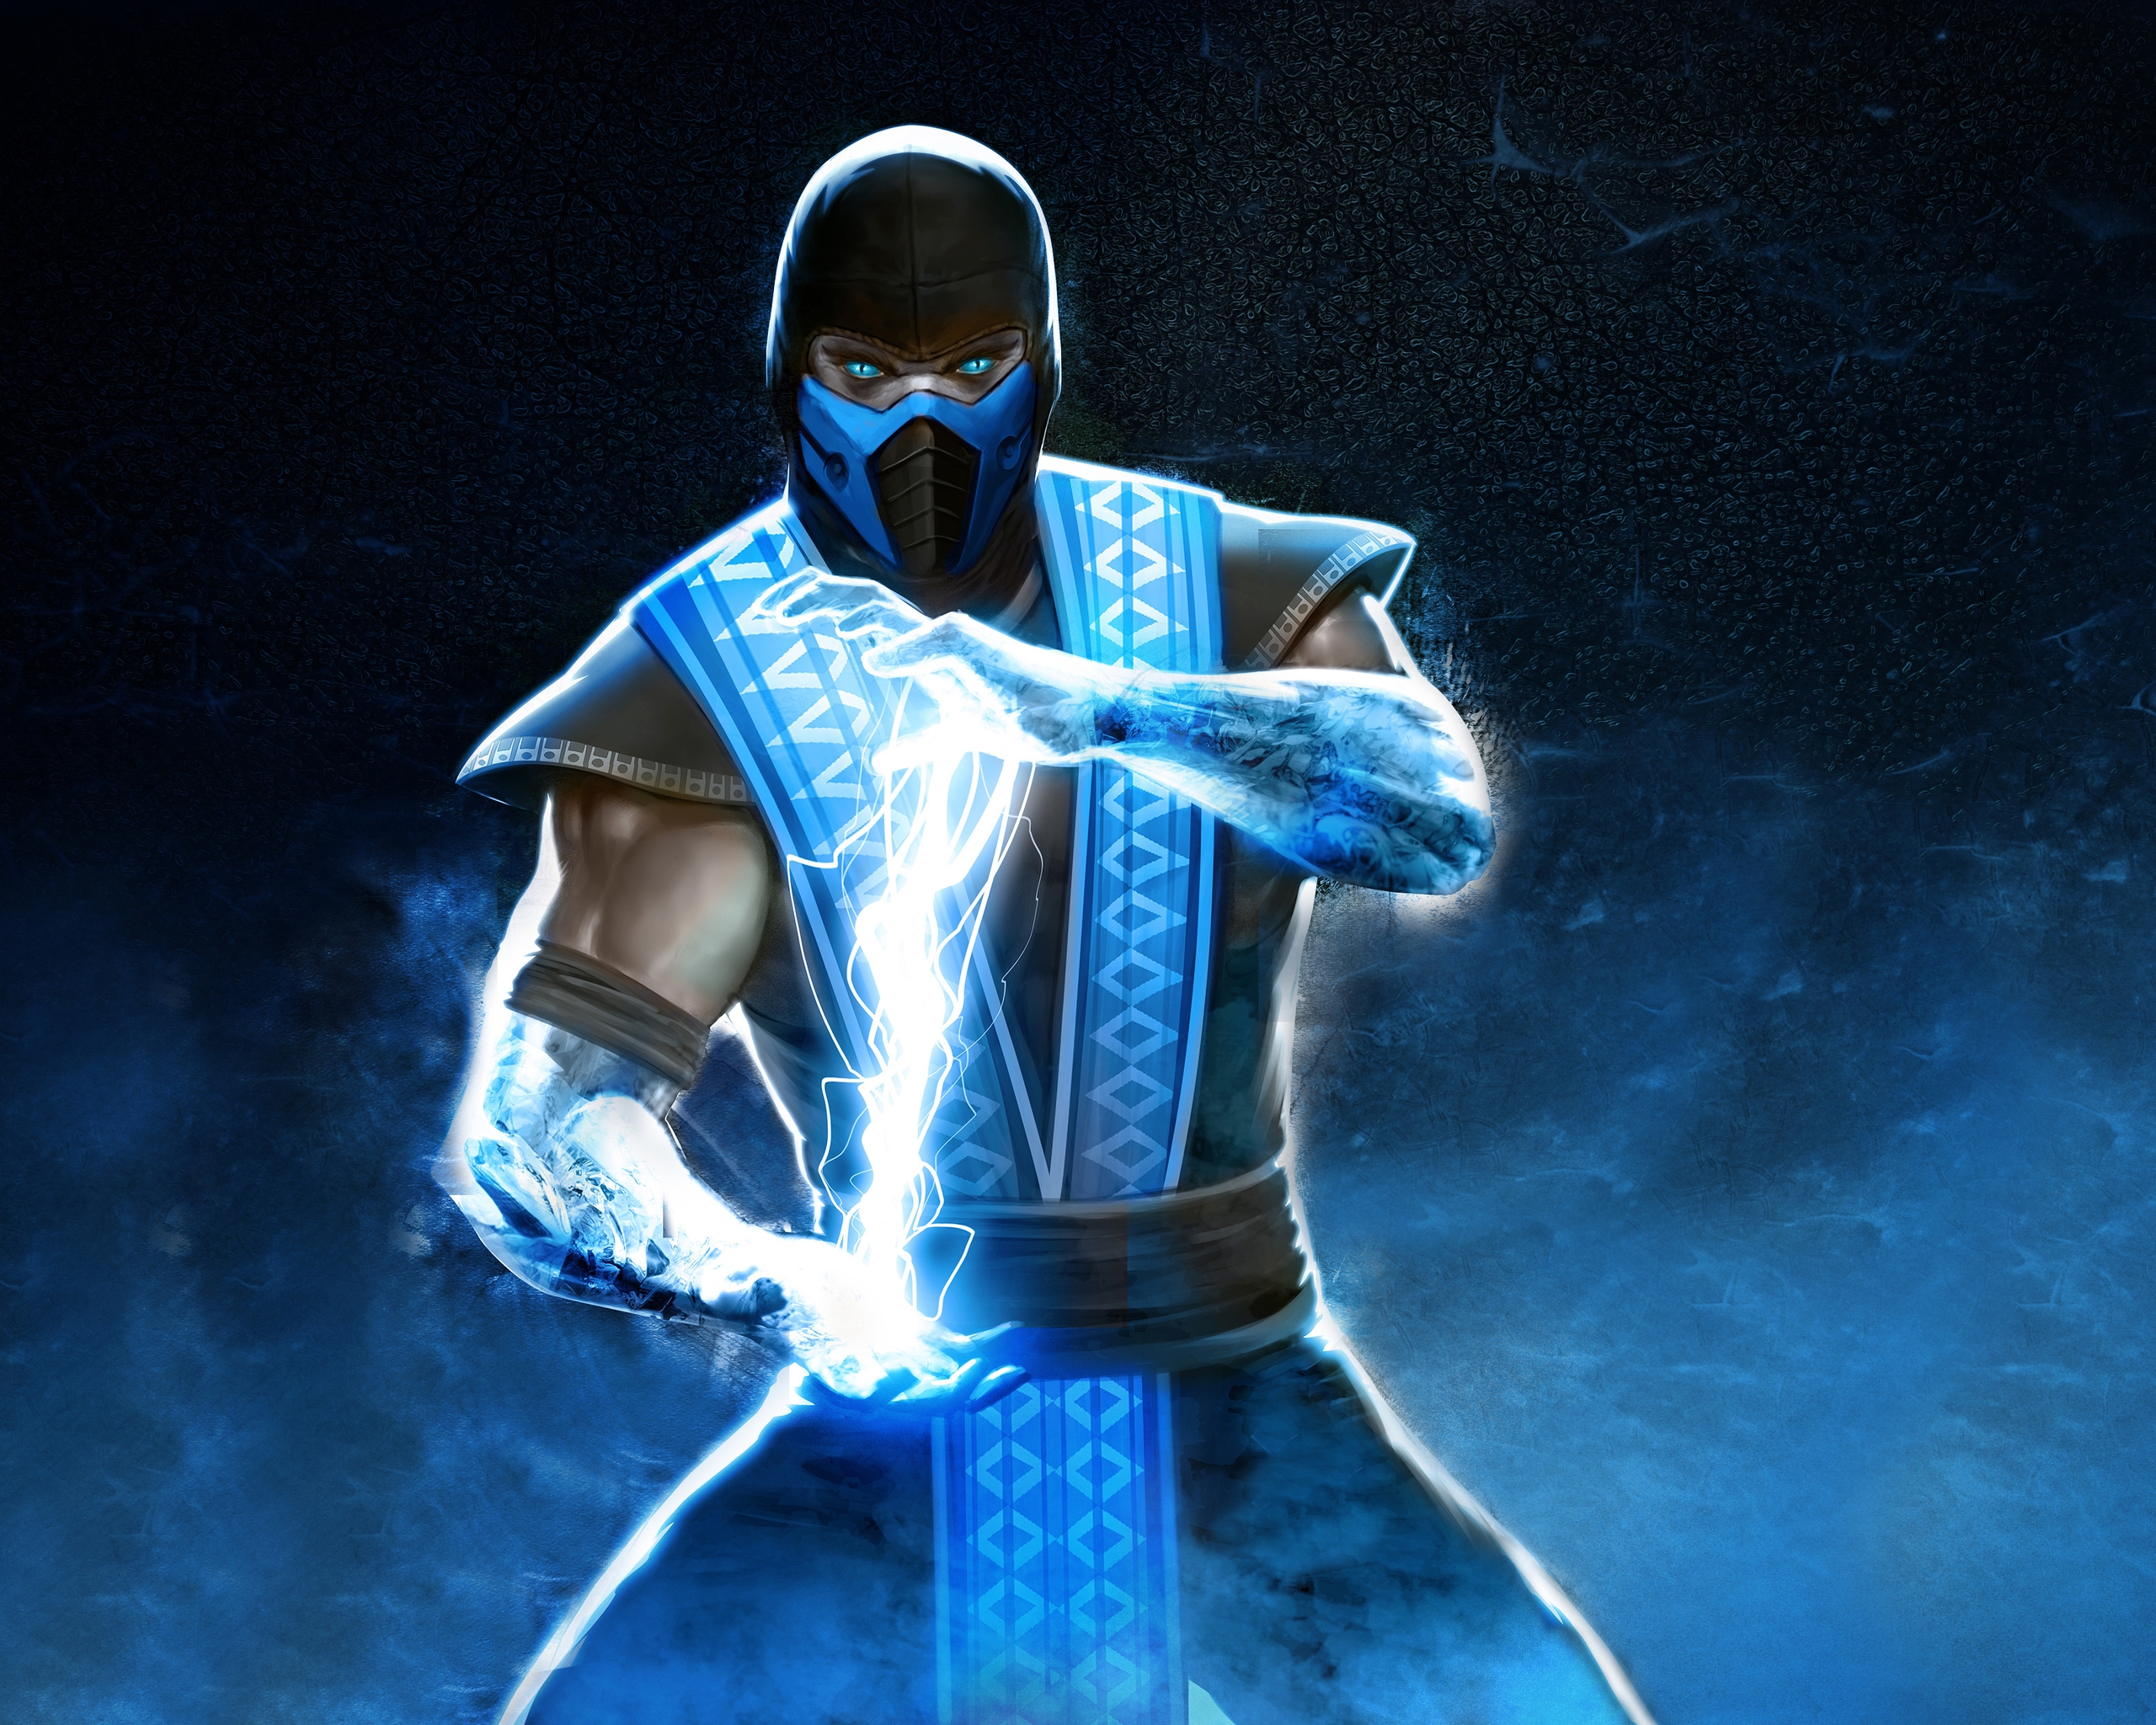 Image: Ninja, lightning, Sub-Zero, ice, look, Mortal Kombat